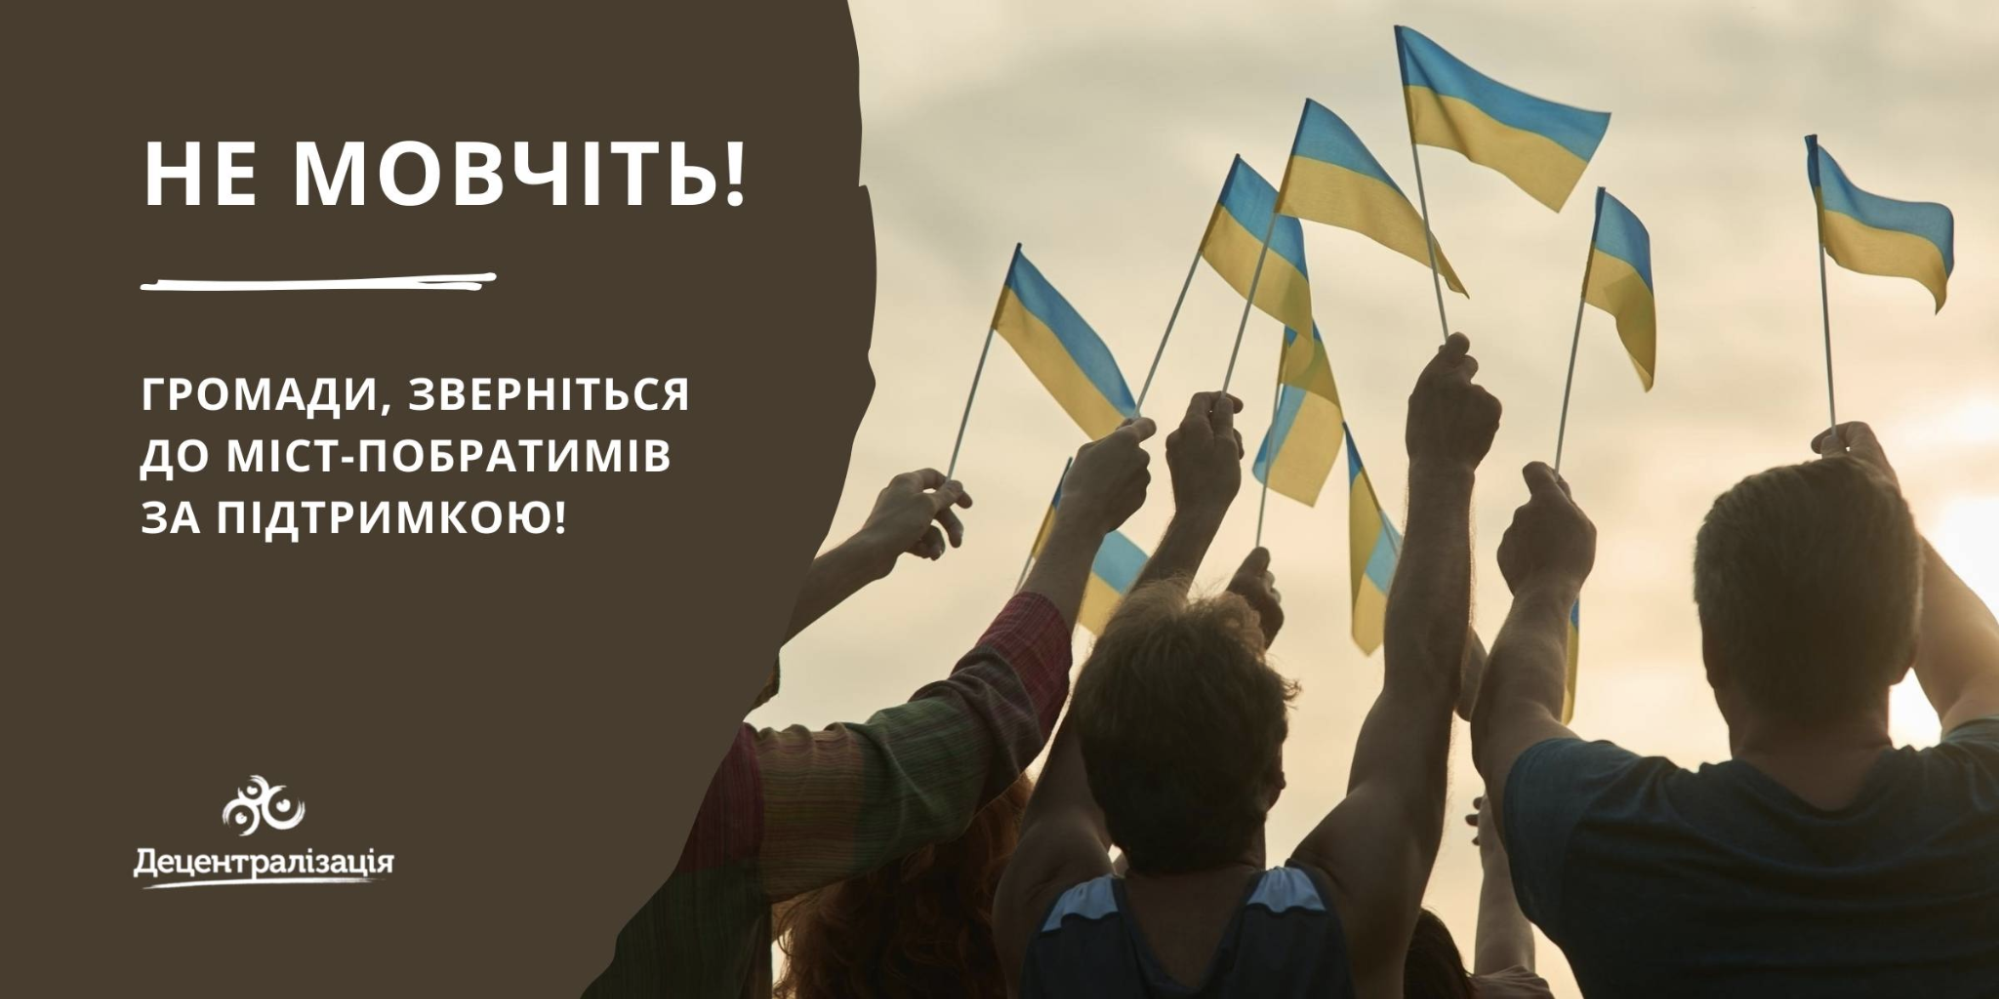 міста-побратими допомагають у відновленні України